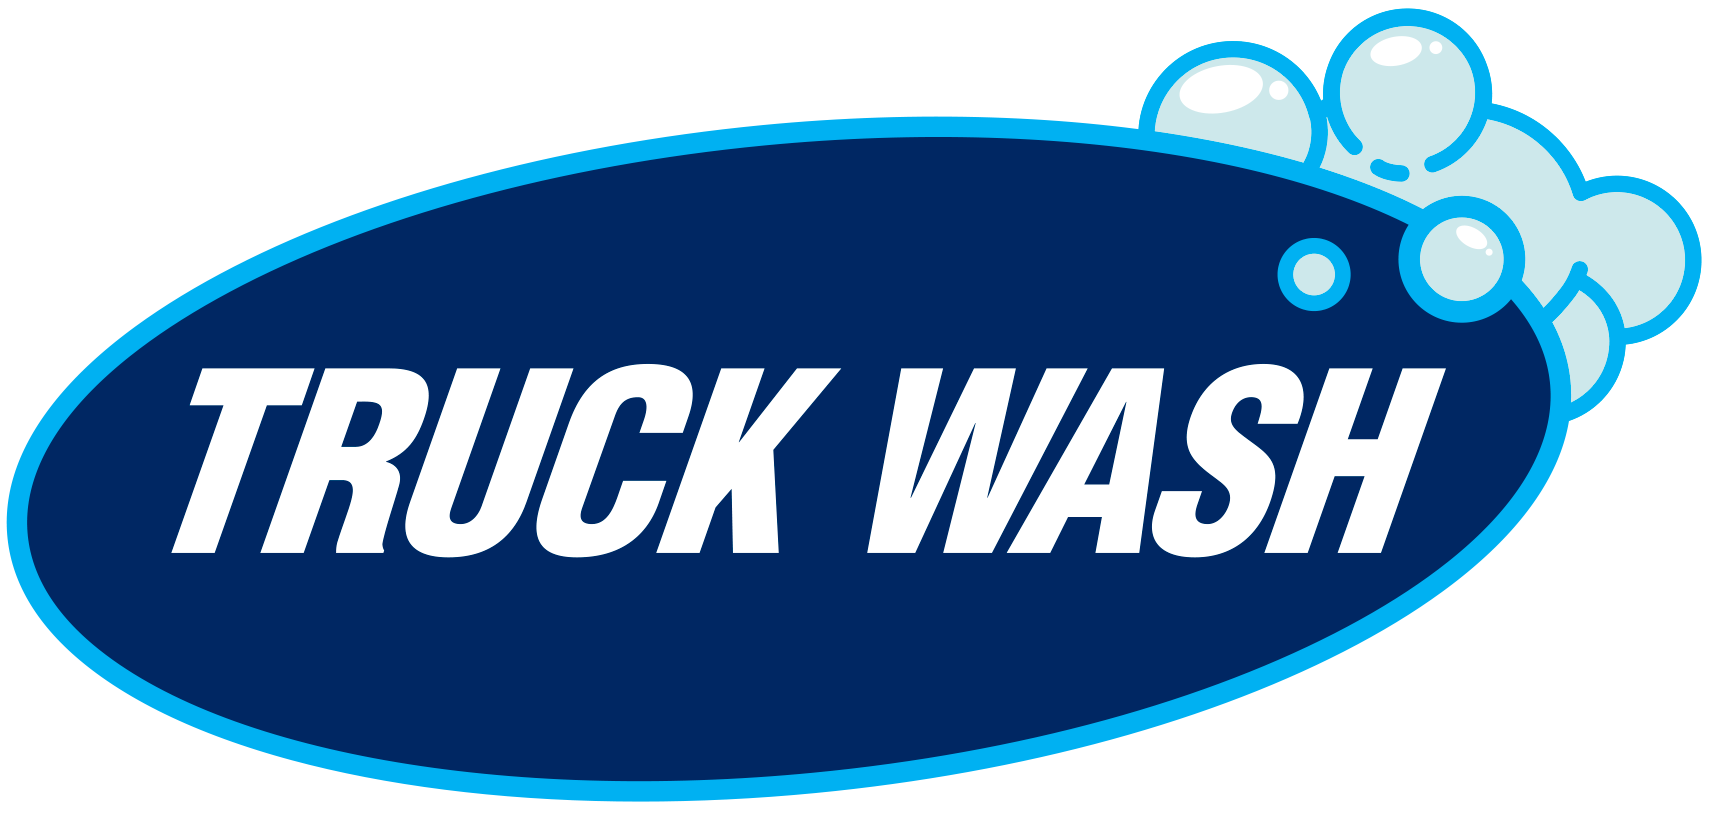 The Love's Truck Wash logo